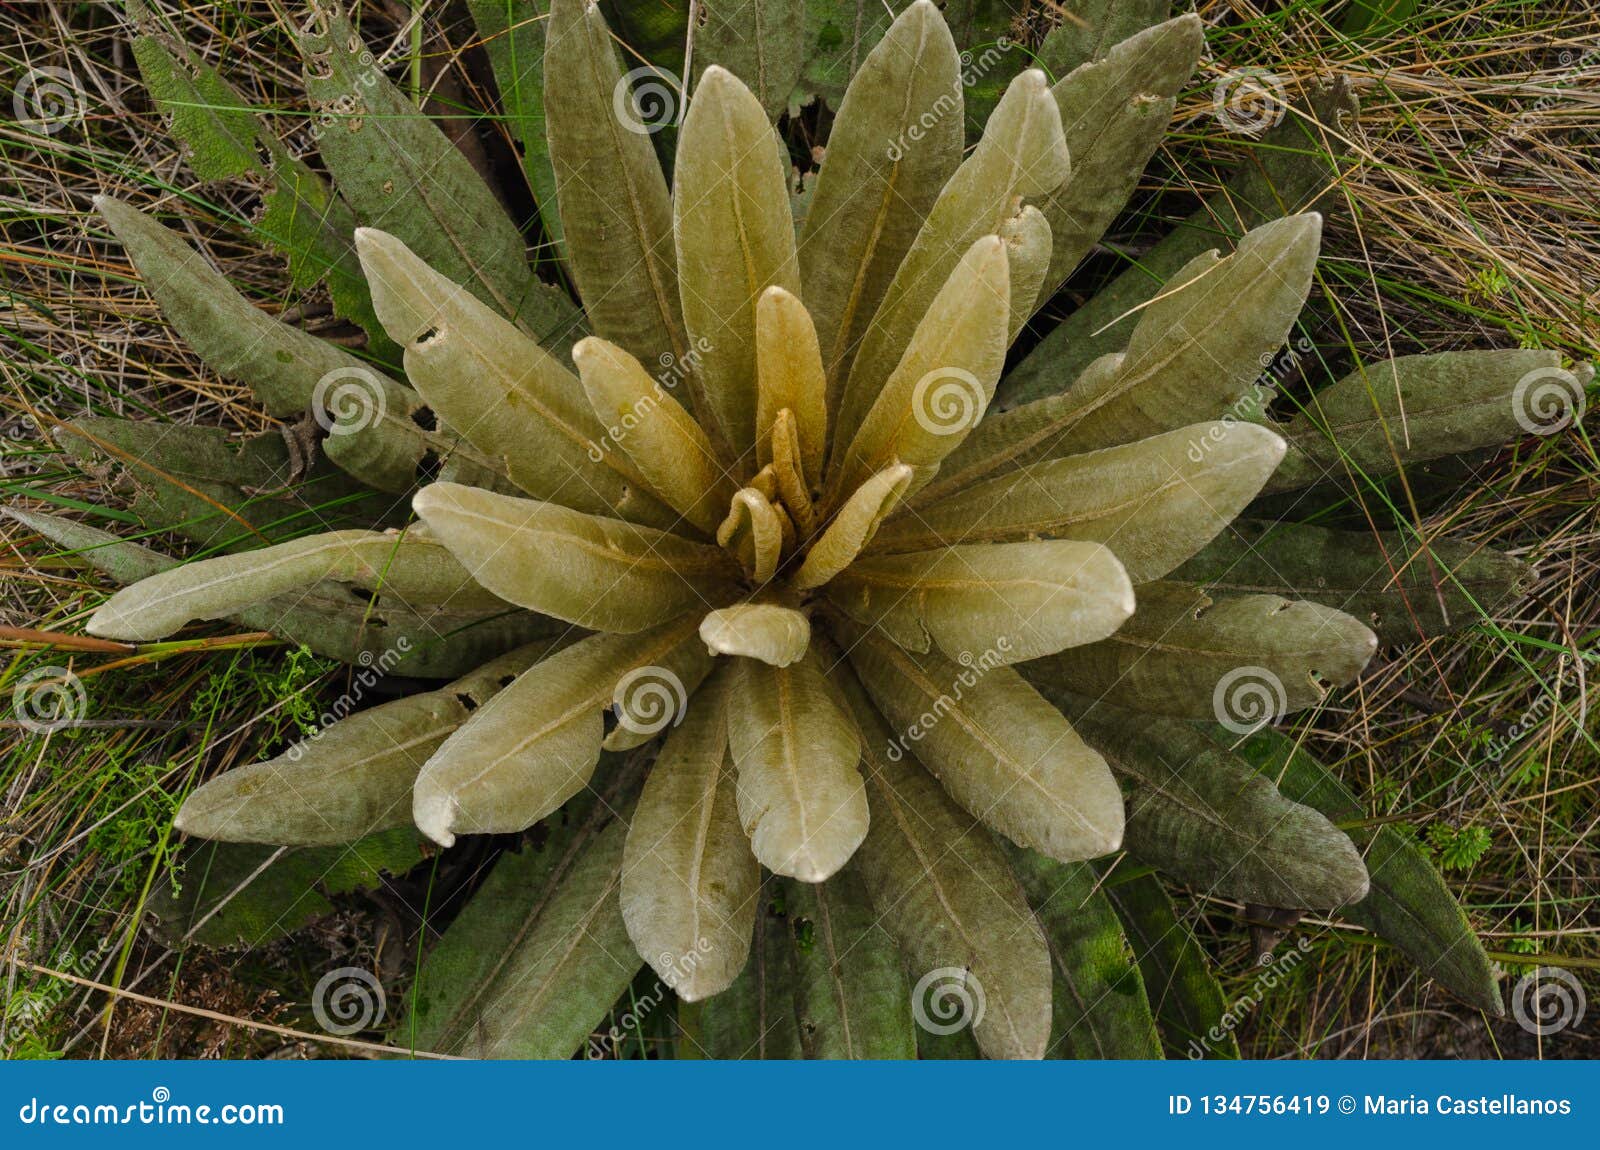 espeletia succulent plants of the pÃÂ¡ramo of colombia. frailejÃÂ³n